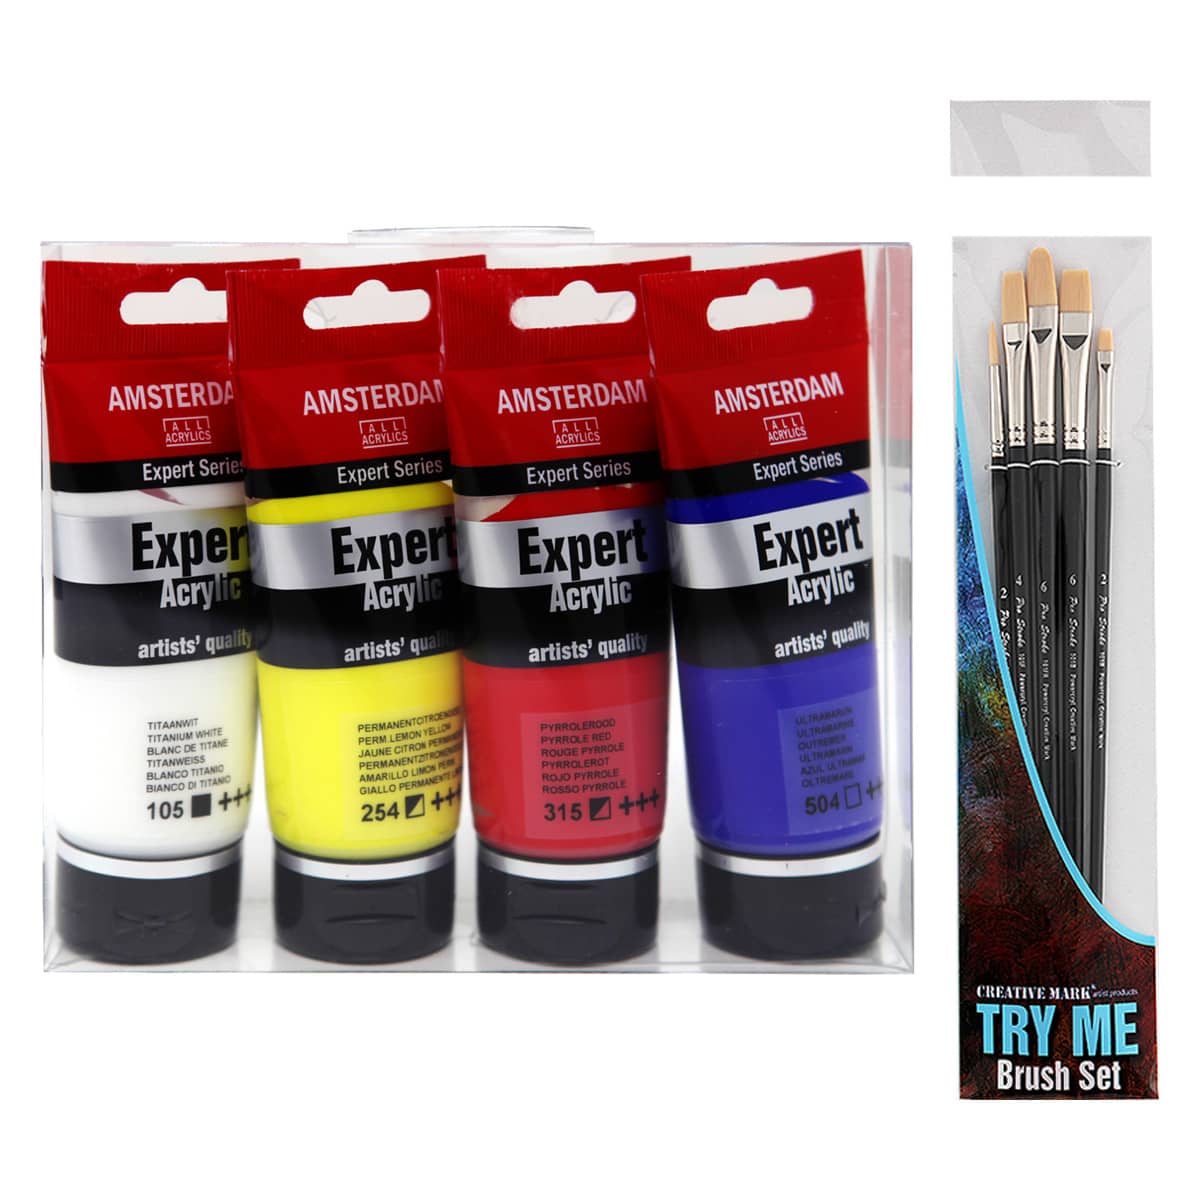 Amsterdam Expert Acrylics Value Set (Set of 4 + 5 Brushes)